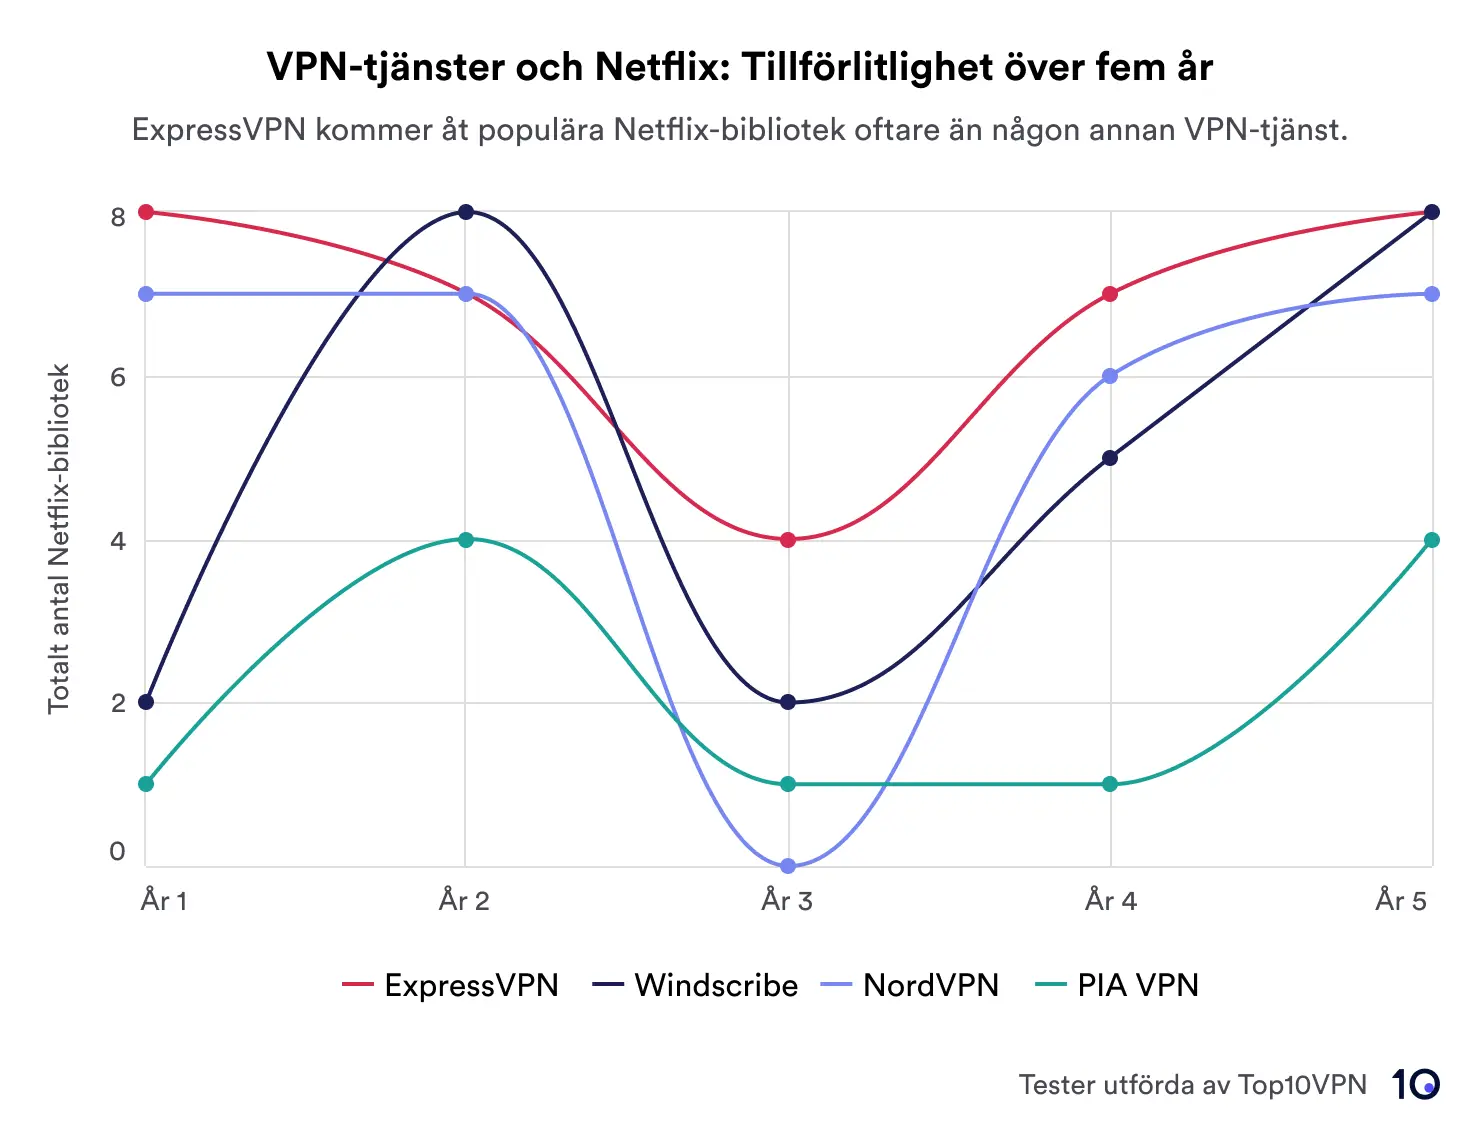 Ett linjediagram som visar prestandan för fyra VPN:er – ExpressVPN, Windscribe, NordVPN och PIA VPN – vid avblockering av Netflix-regioner under fem år. ExpressVPN leder i tillförlitlighet.